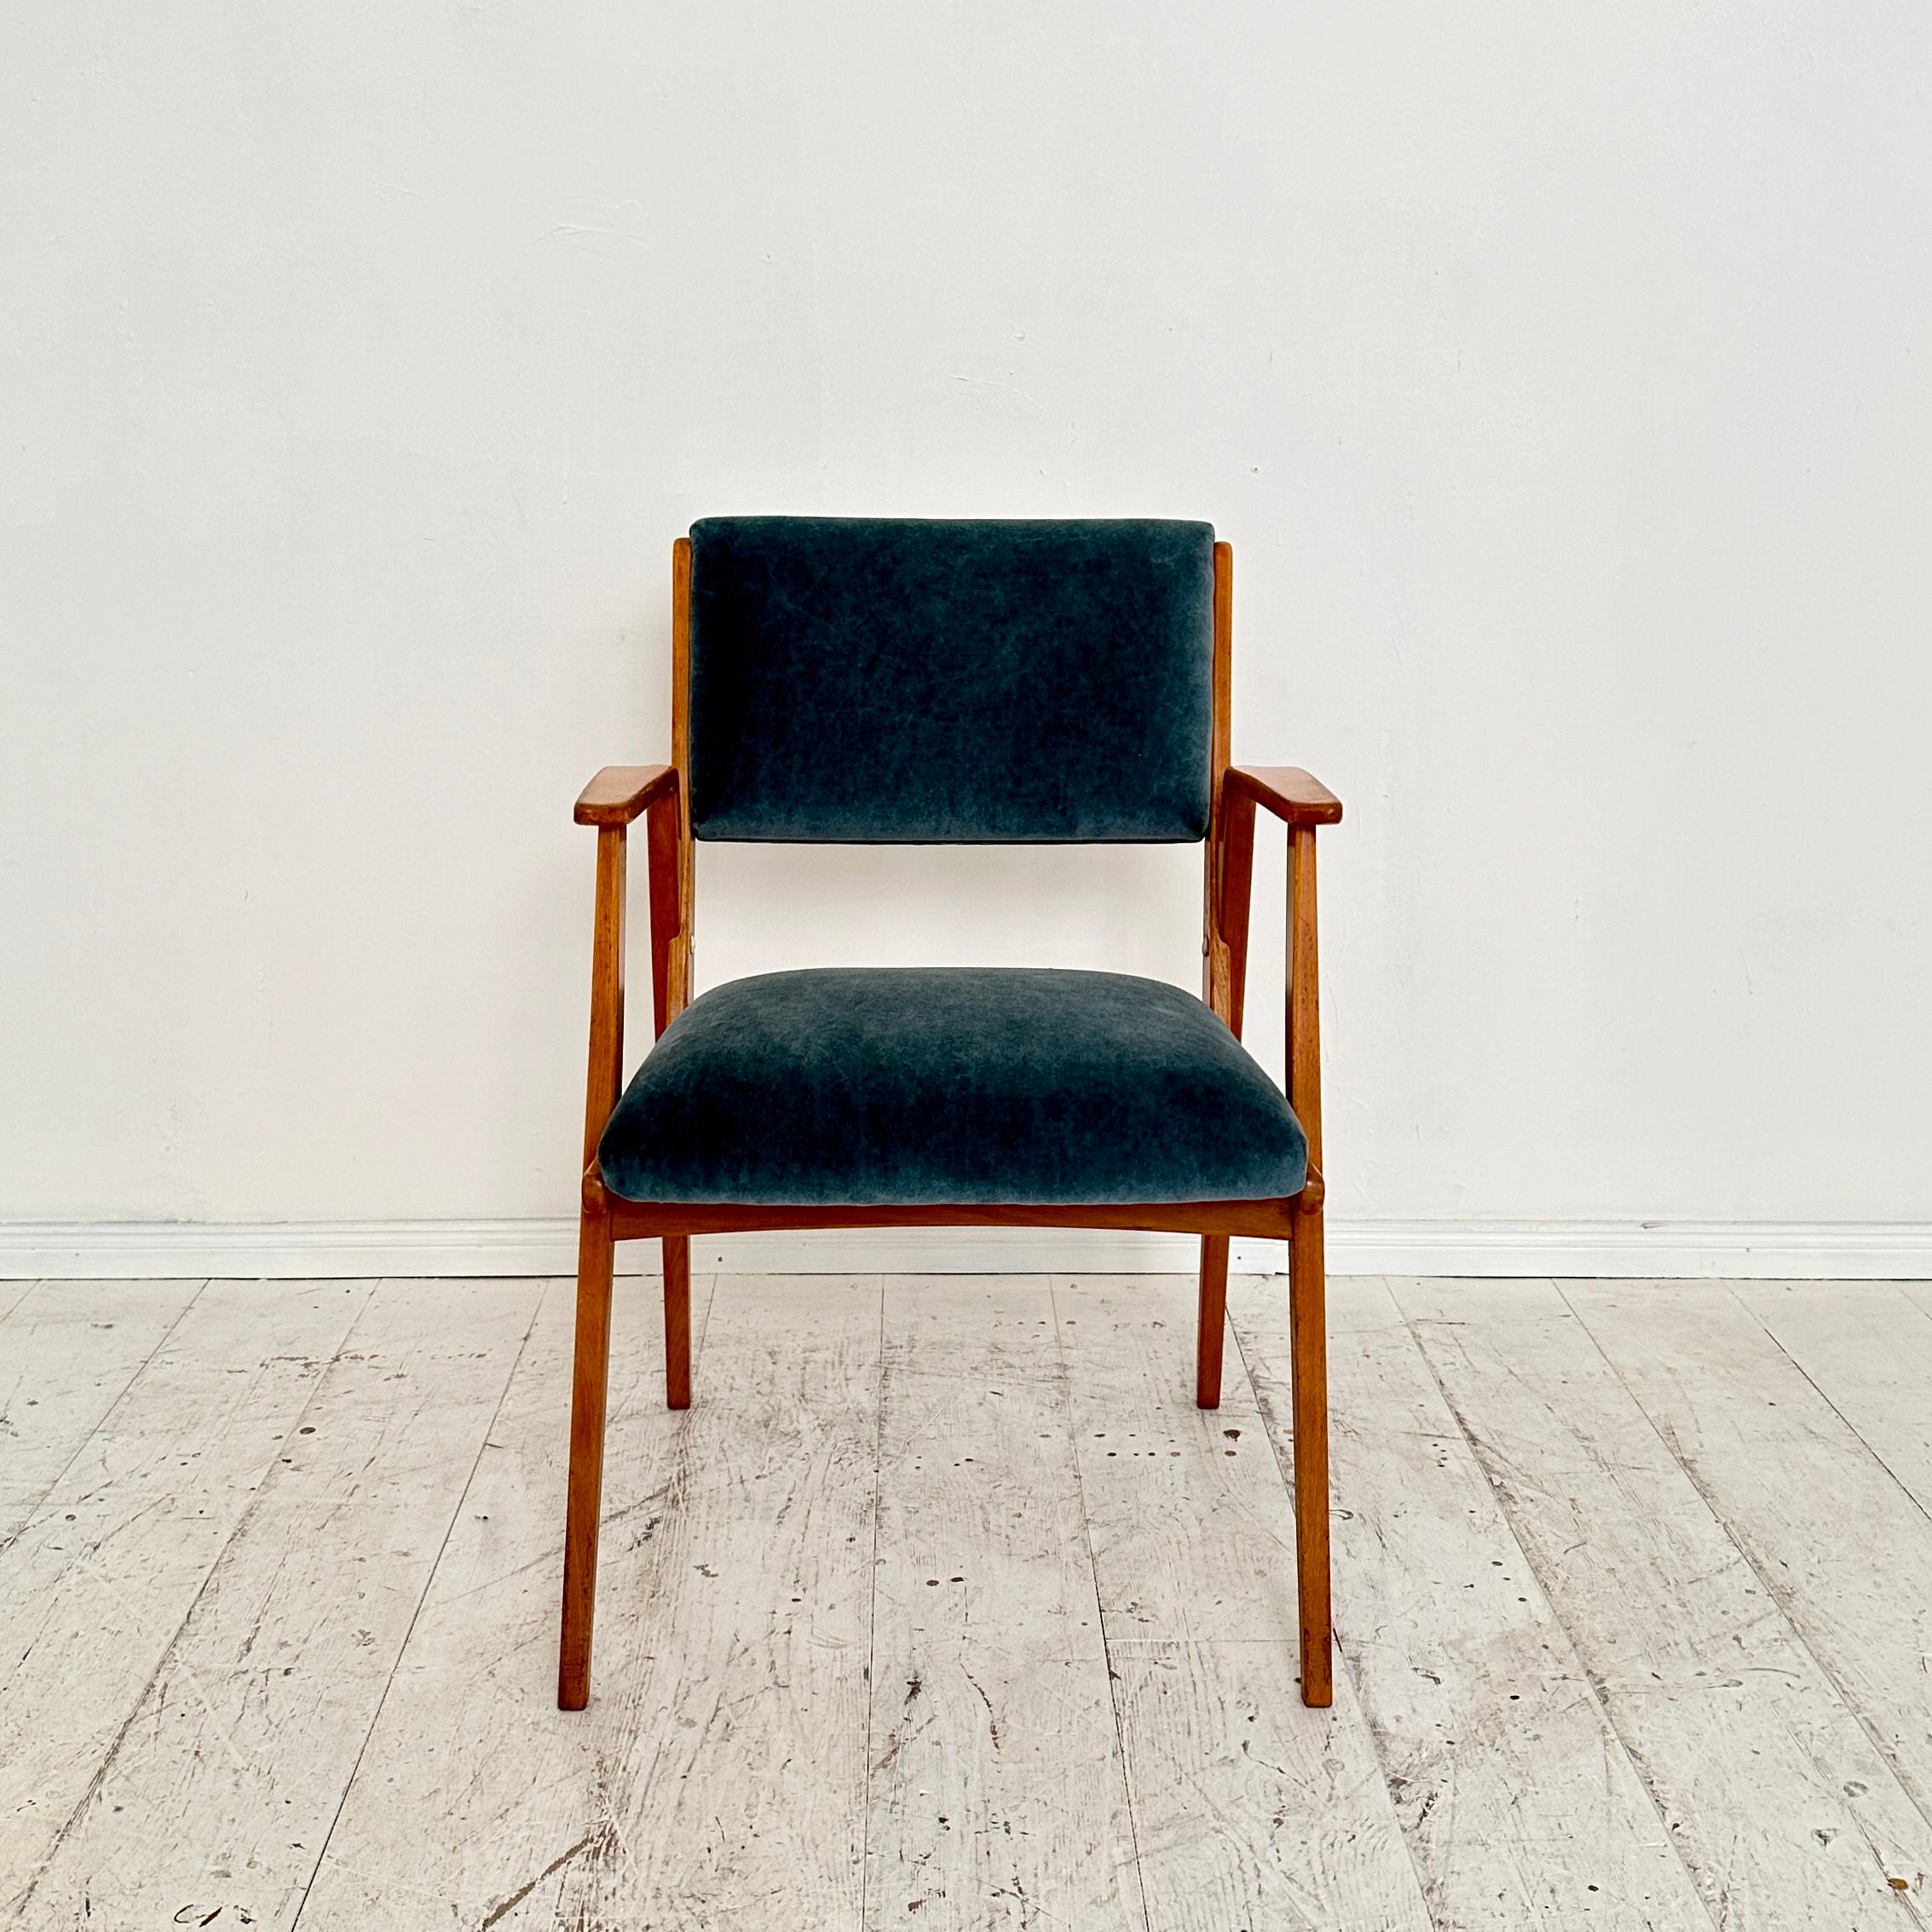 Dieser deutsche Sessel aus der Mitte des Jahrhunderts, hergestellt um 1950, ist eine zeitlose Verkörperung von elegantem Design und dauerhaftem Komfort. 
Der Stuhl besteht aus einem robusten Buchenholzrahmen, der die tadellose Handwerkskunst der